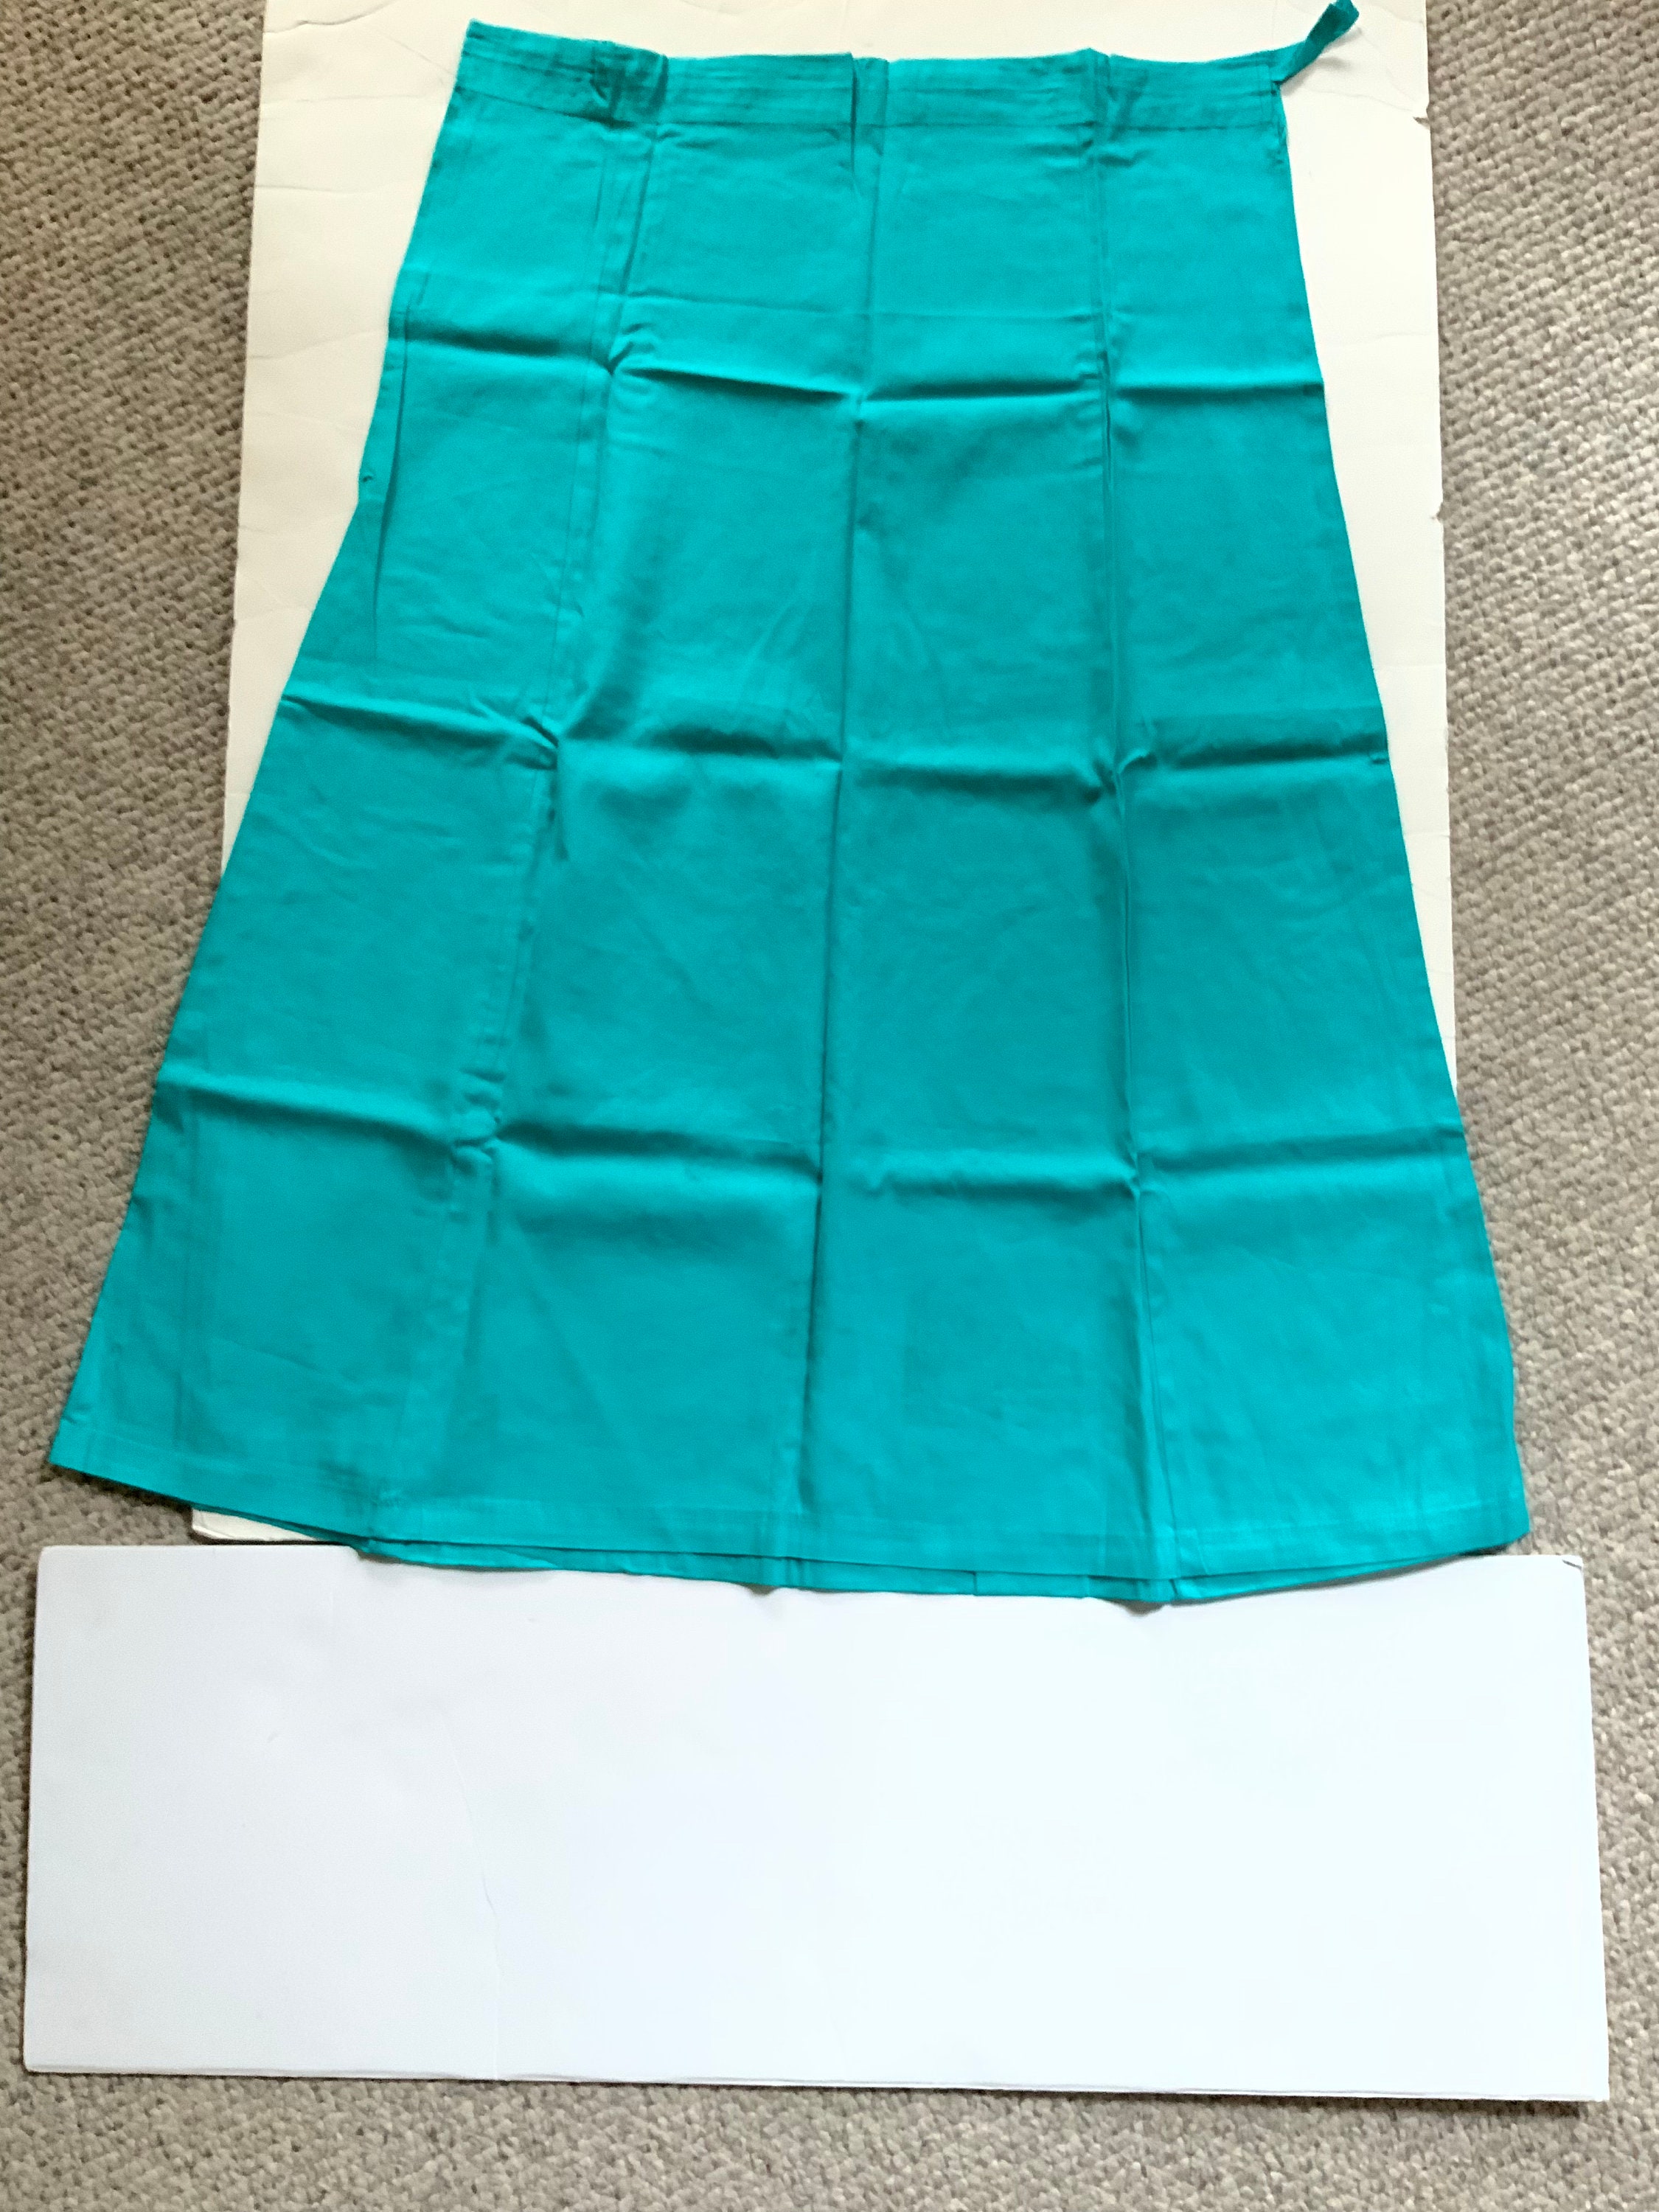 100% Cotton Womans Underskirt Petticoat Liner Slip Skirt for - Etsy